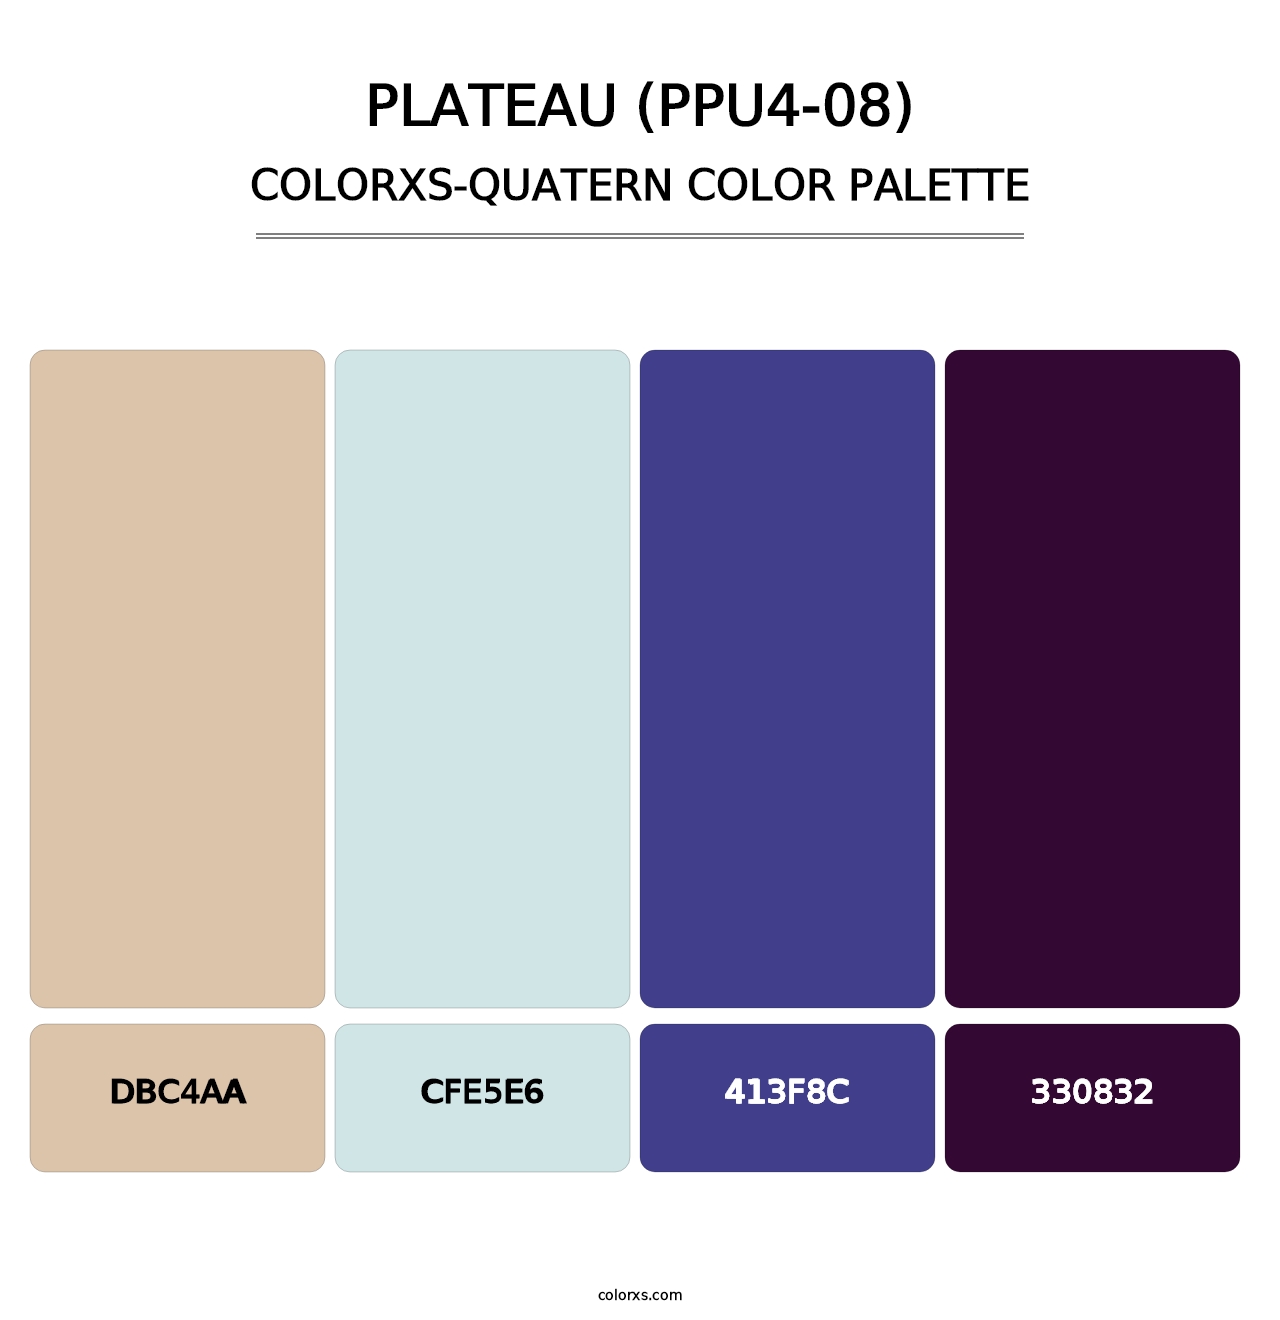 Plateau (PPU4-08) - Colorxs Quatern Palette